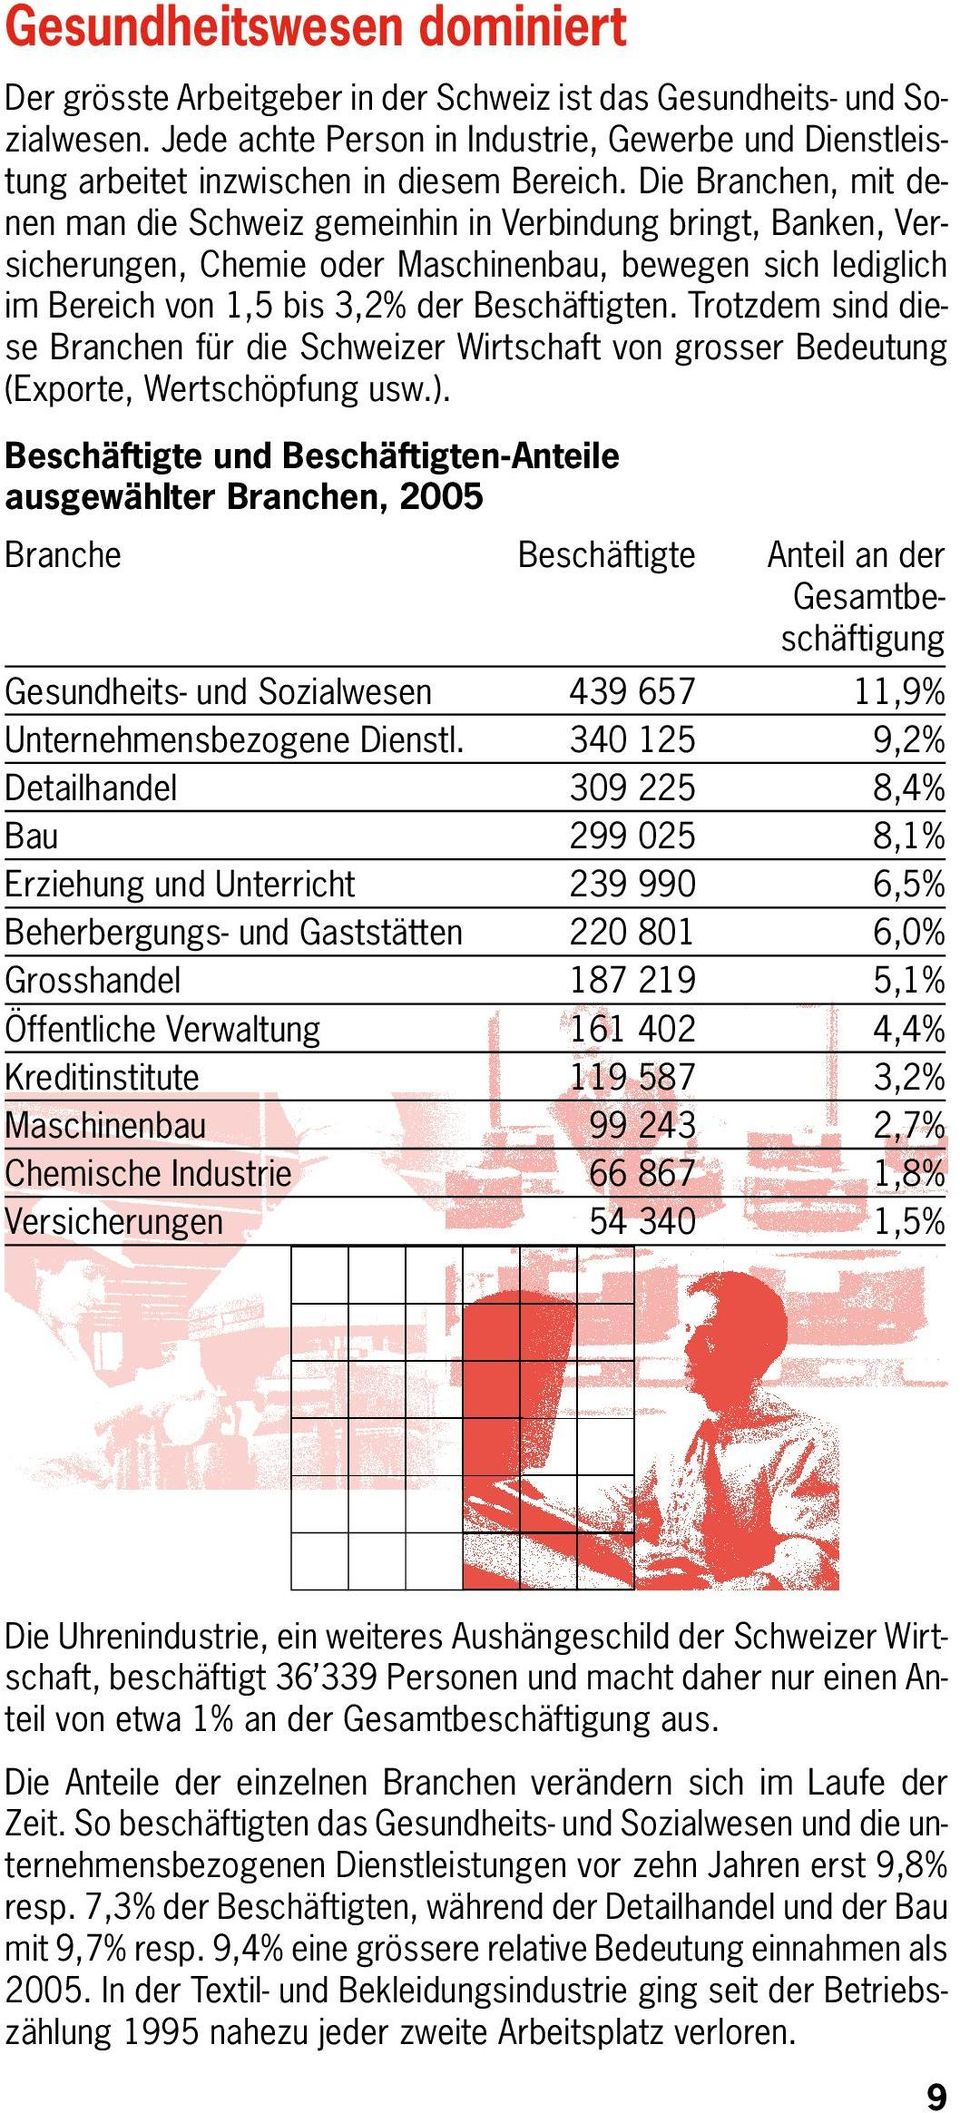 Die Branchen, mit denen man die Schweiz gemeinhin in Verbindung bringt, Banken, Versicherungen, Chemie oder Maschinenbau, bewegen sich lediglich im Bereich von 1,5 bis 3,2% der Beschäftigten.